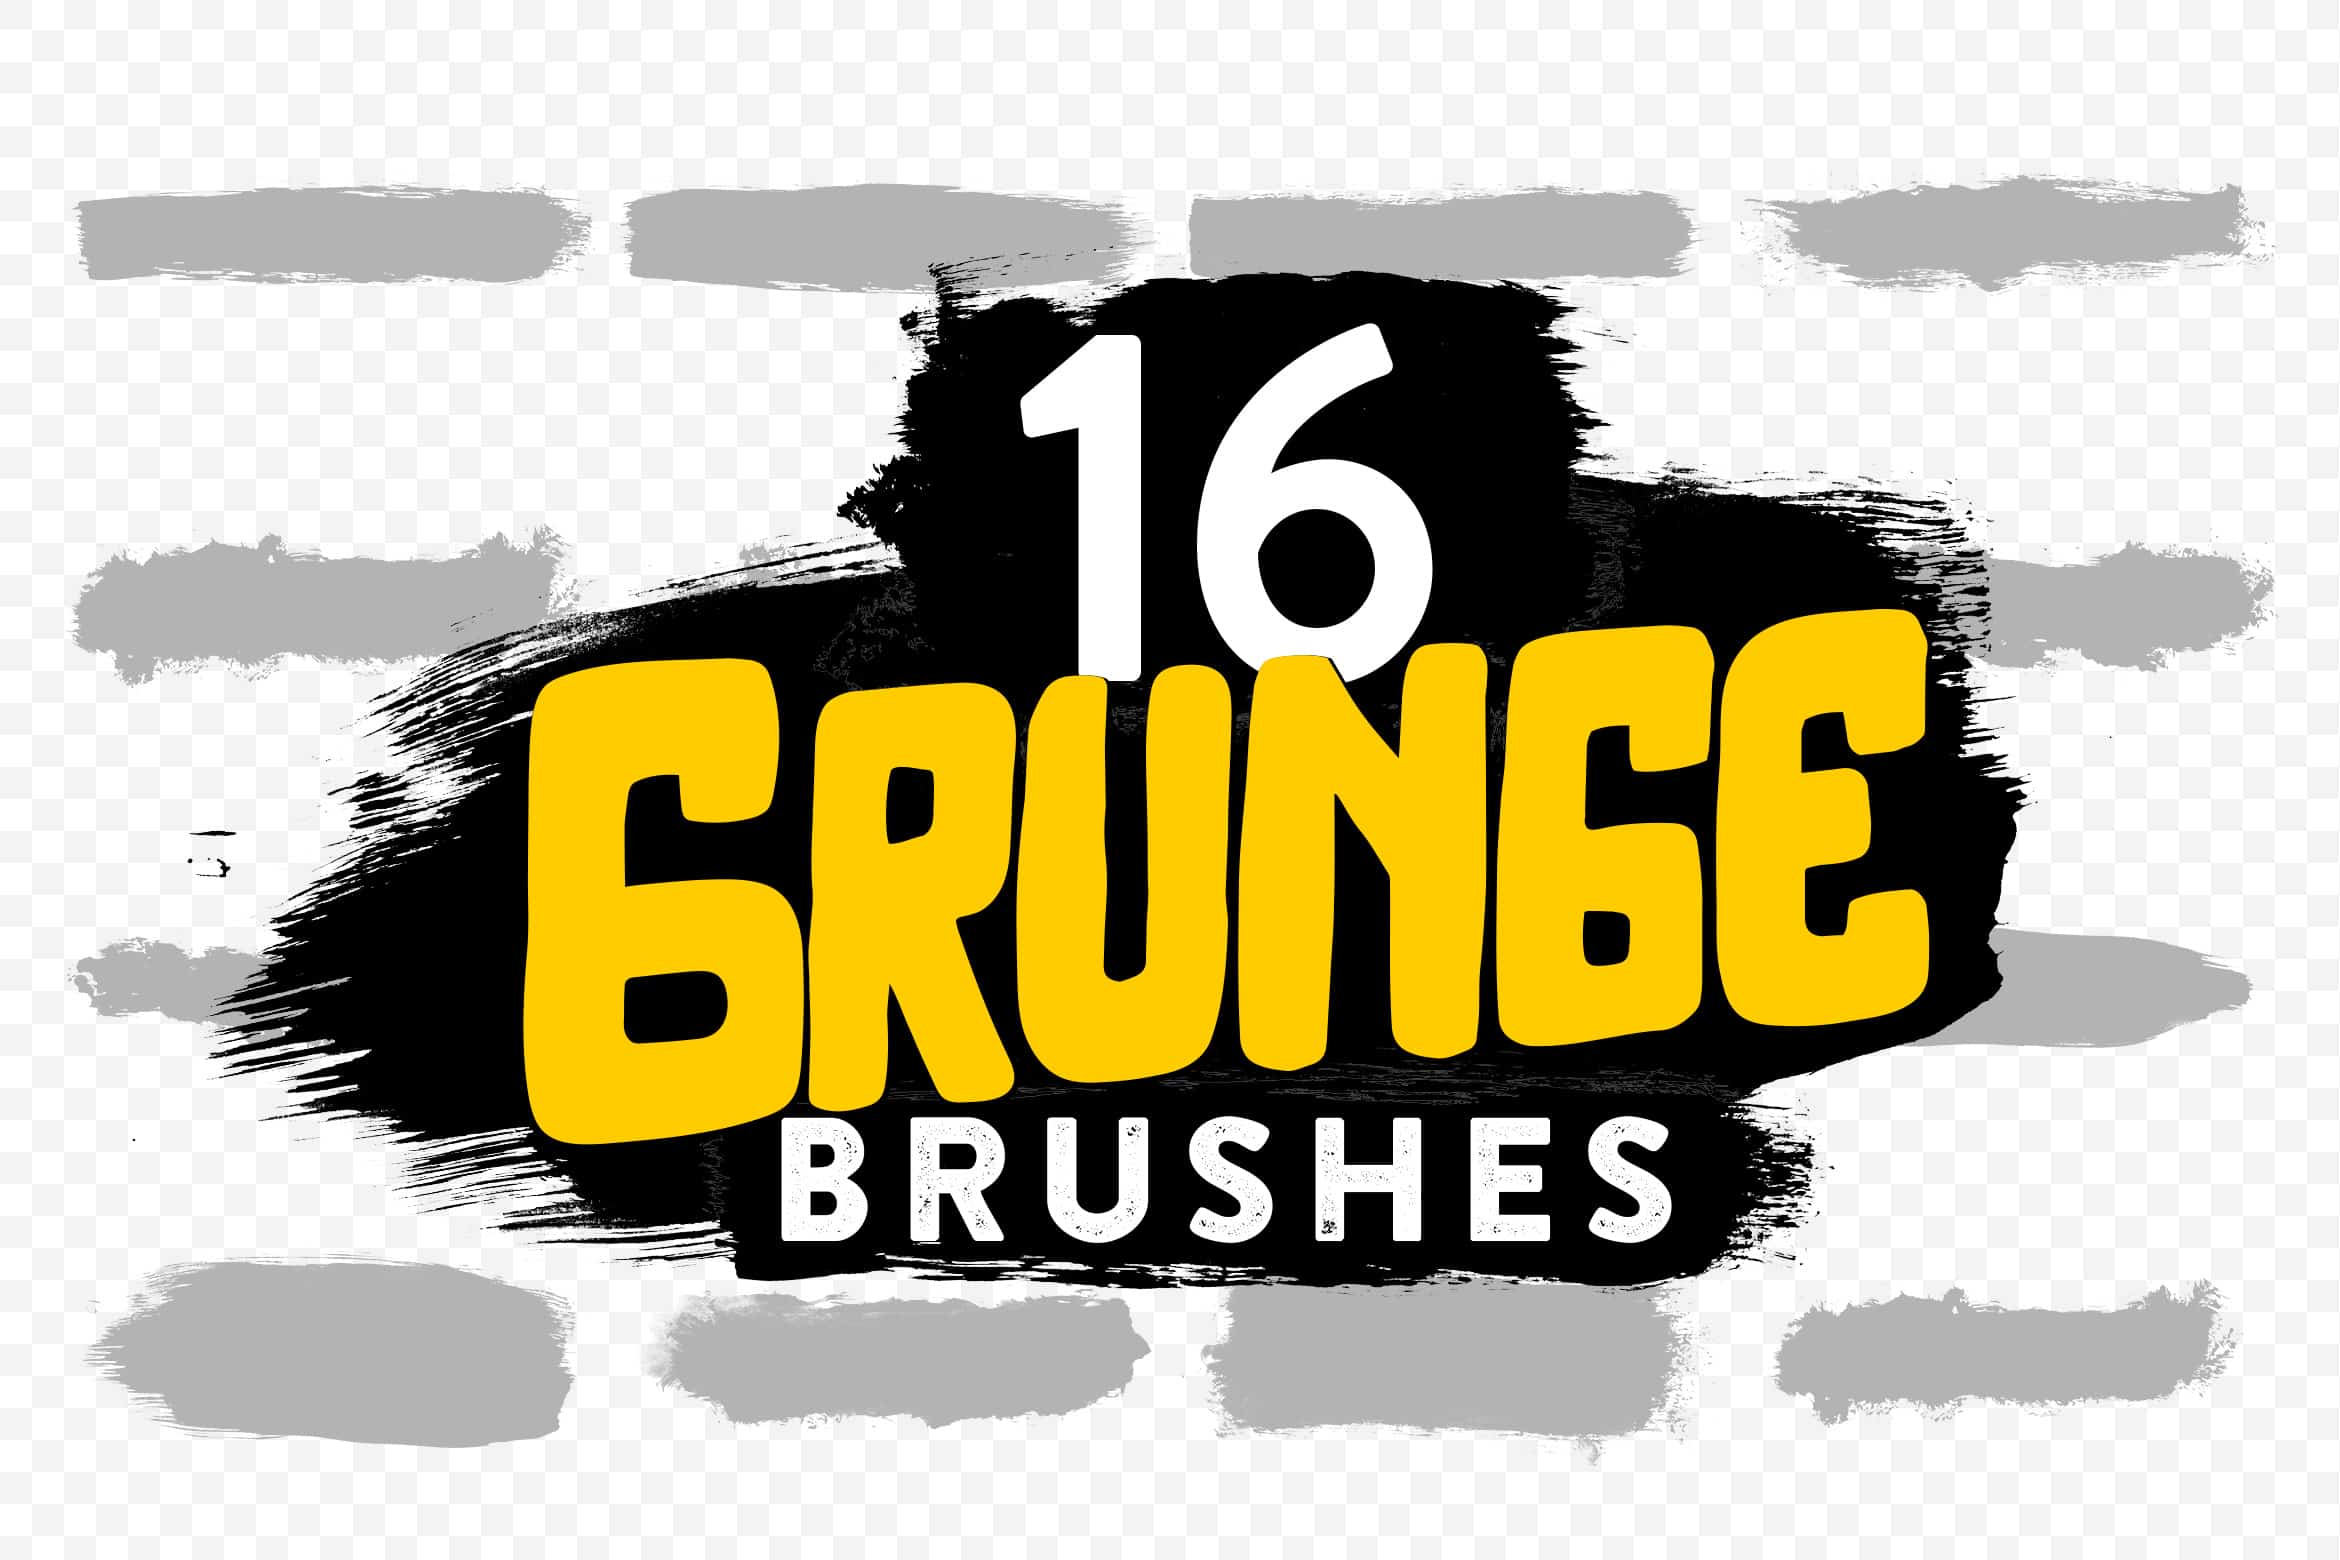 16 Grunge Brushes